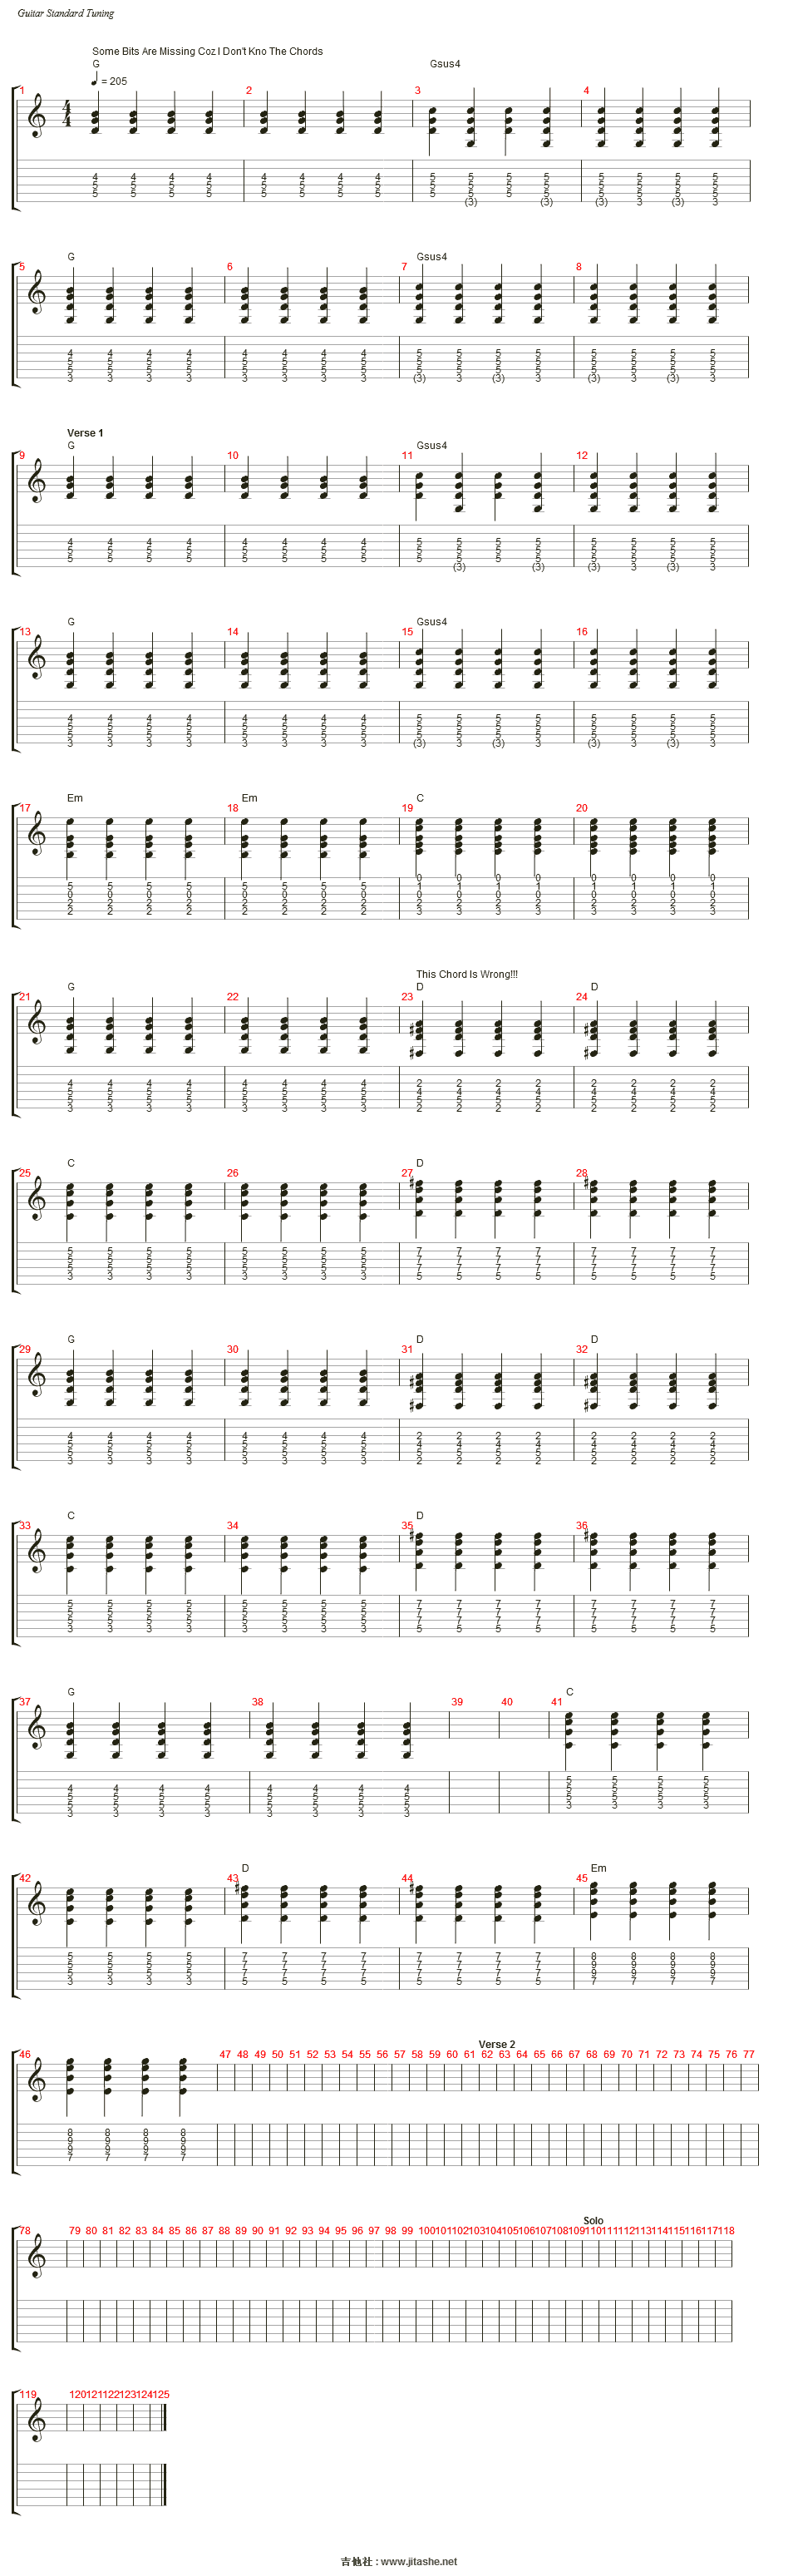 节拍:moderate                        ♩ = 205 和弦:g gsus4